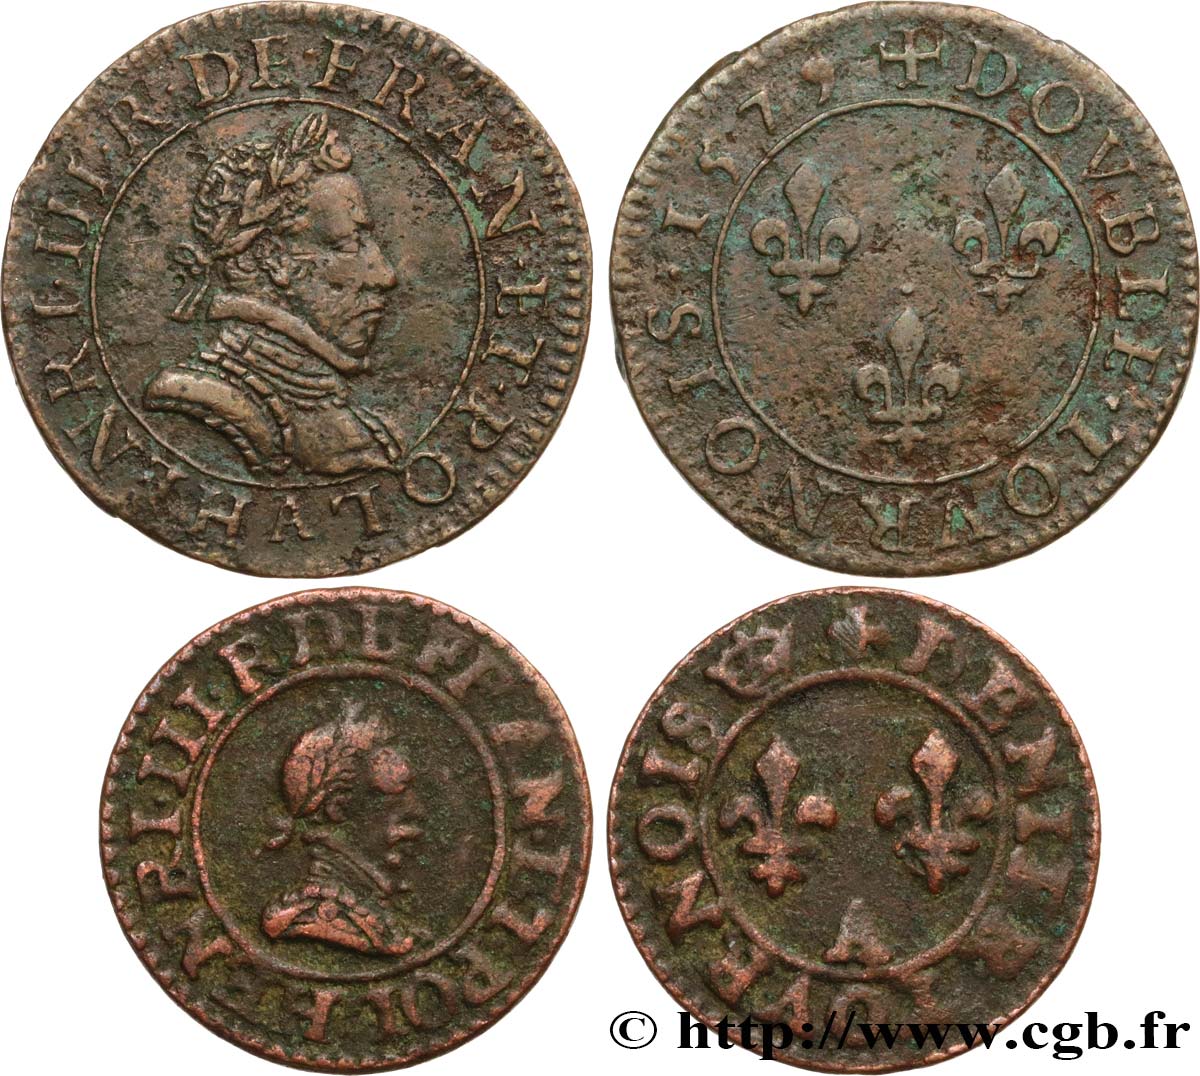 HENRY III Lot de 2 monnaies royales n.d. Ateliers divers S